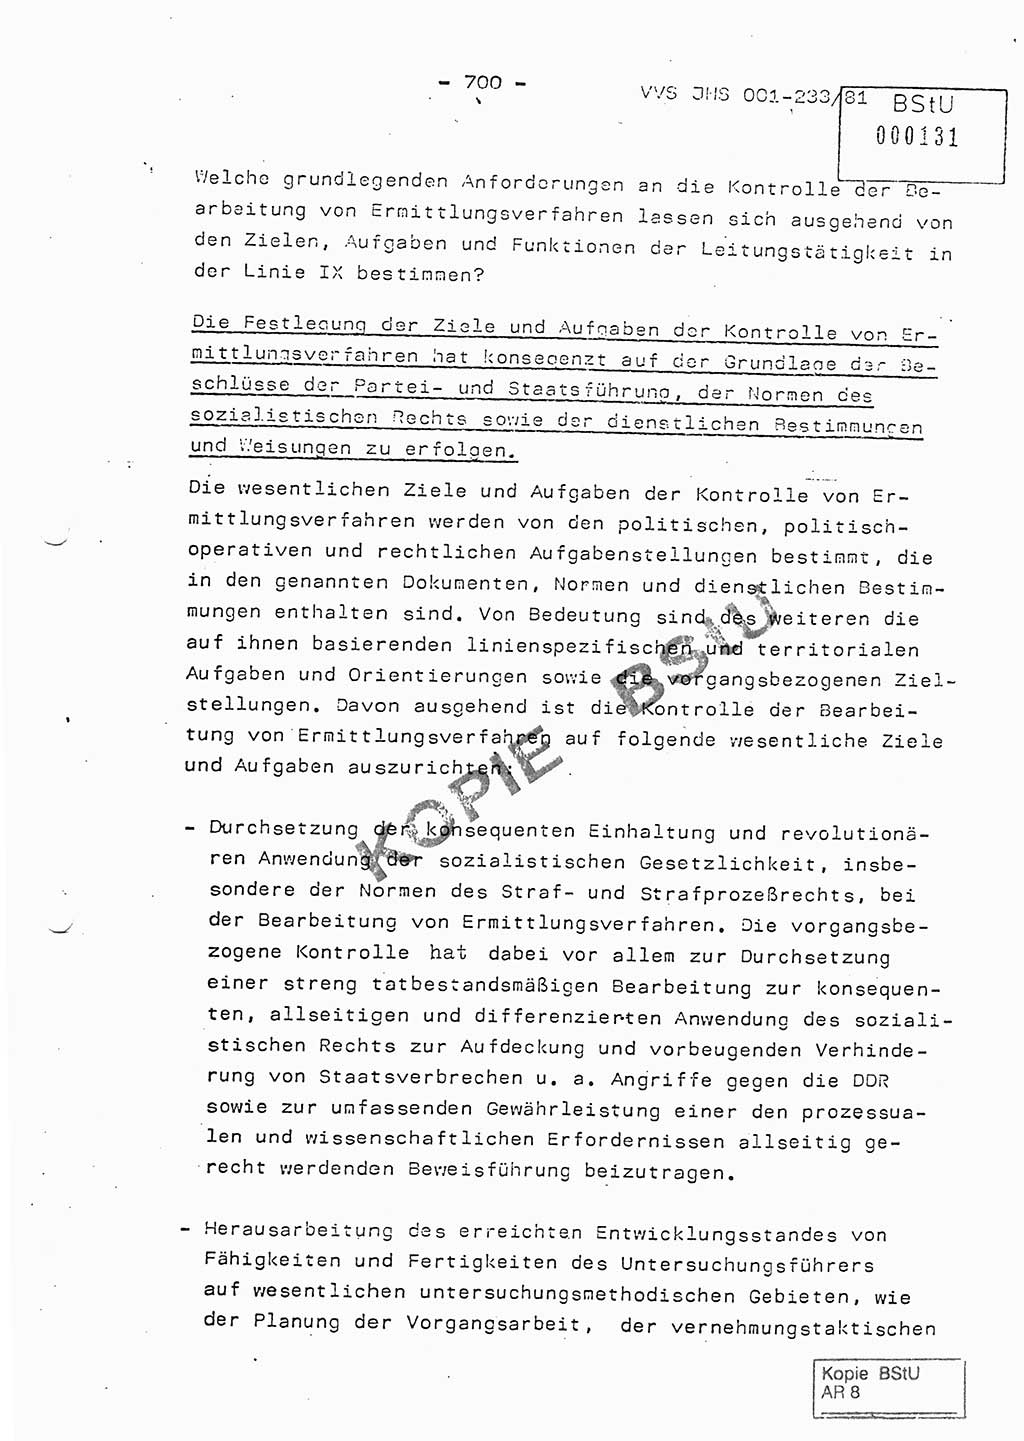 Dissertation Oberstleutnant Horst Zank (JHS), Oberstleutnant Dr. Karl-Heinz Knoblauch (JHS), Oberstleutnant Gustav-Adolf Kowalewski (HA Ⅸ), Oberstleutnant Wolfgang Plötner (HA Ⅸ), Ministerium für Staatssicherheit (MfS) [Deutsche Demokratische Republik (DDR)], Juristische Hochschule (JHS), Vertrauliche Verschlußsache (VVS) o001-233/81, Potsdam 1981, Blatt 700 (Diss. MfS DDR JHS VVS o001-233/81 1981, Bl. 700)